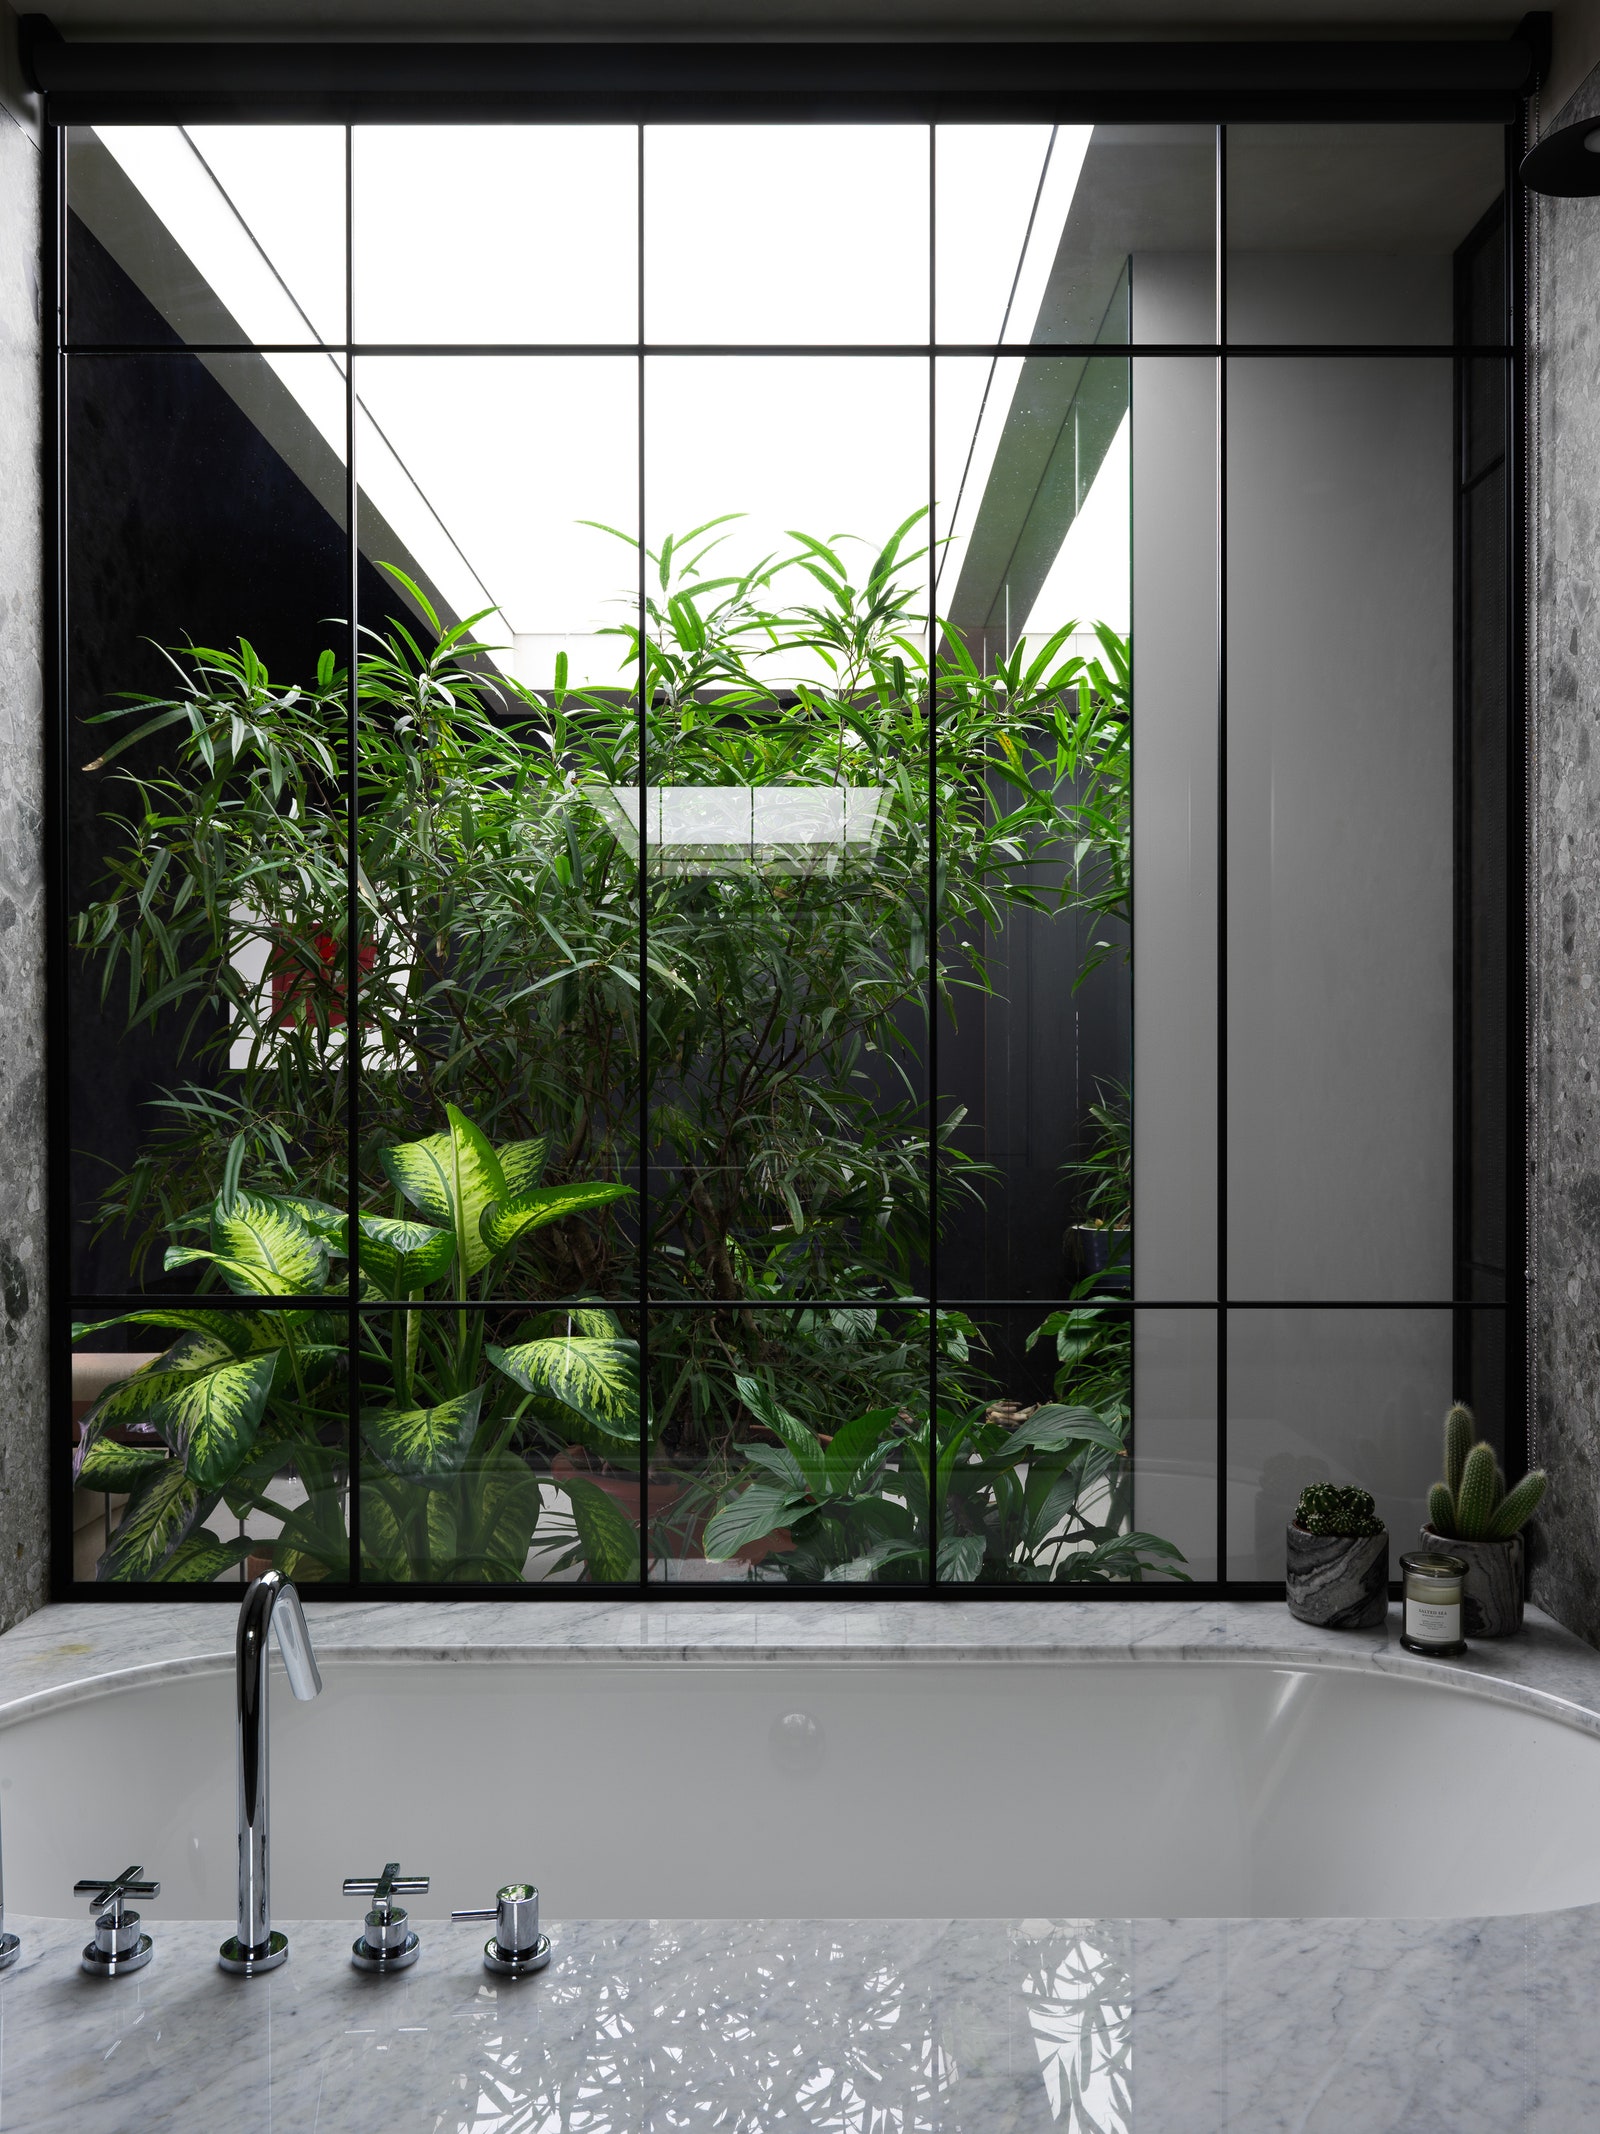 Квартира с зимним садом дизайнера Елены Горенштейн. Санузел в мастерспальне. Вид из ванной отделанной мрамором...